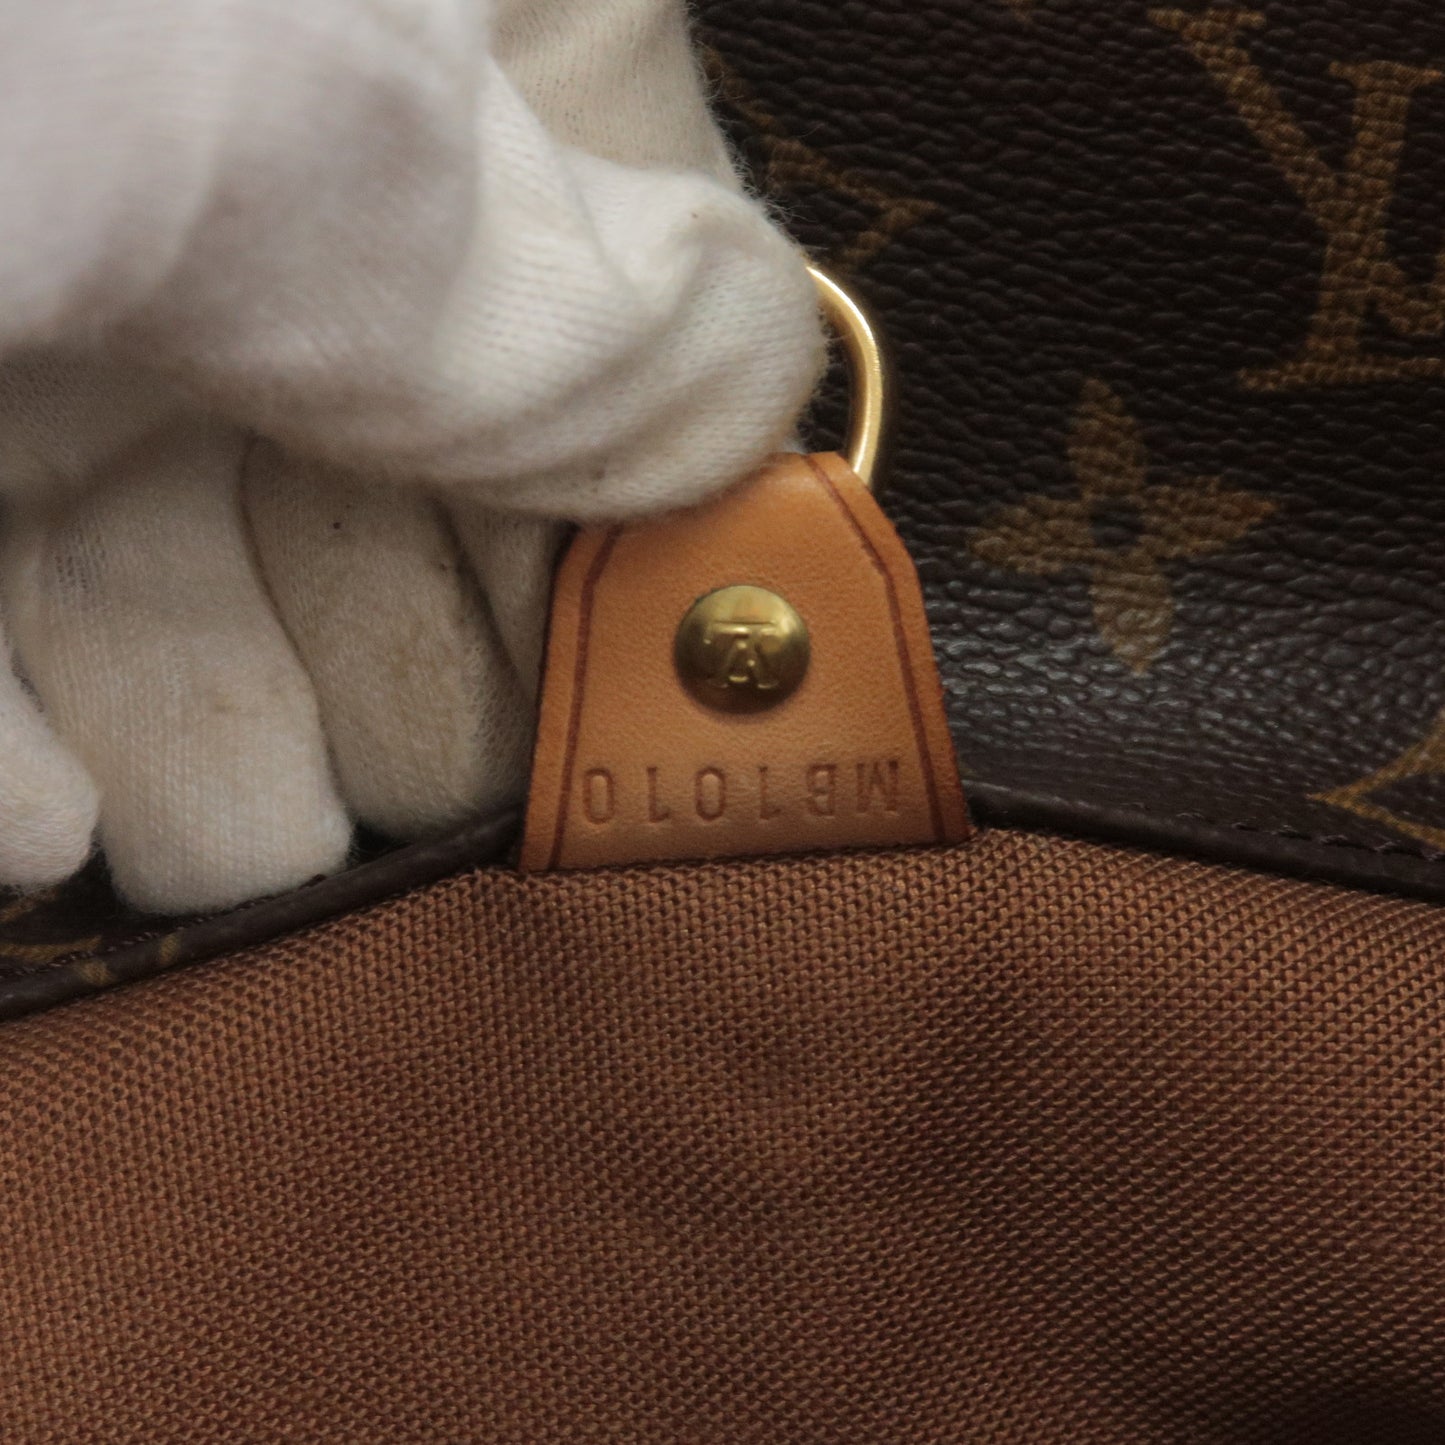 M51108 – dct - Vuitton - Sac - Louis - Shoulder - Monogram - Bag